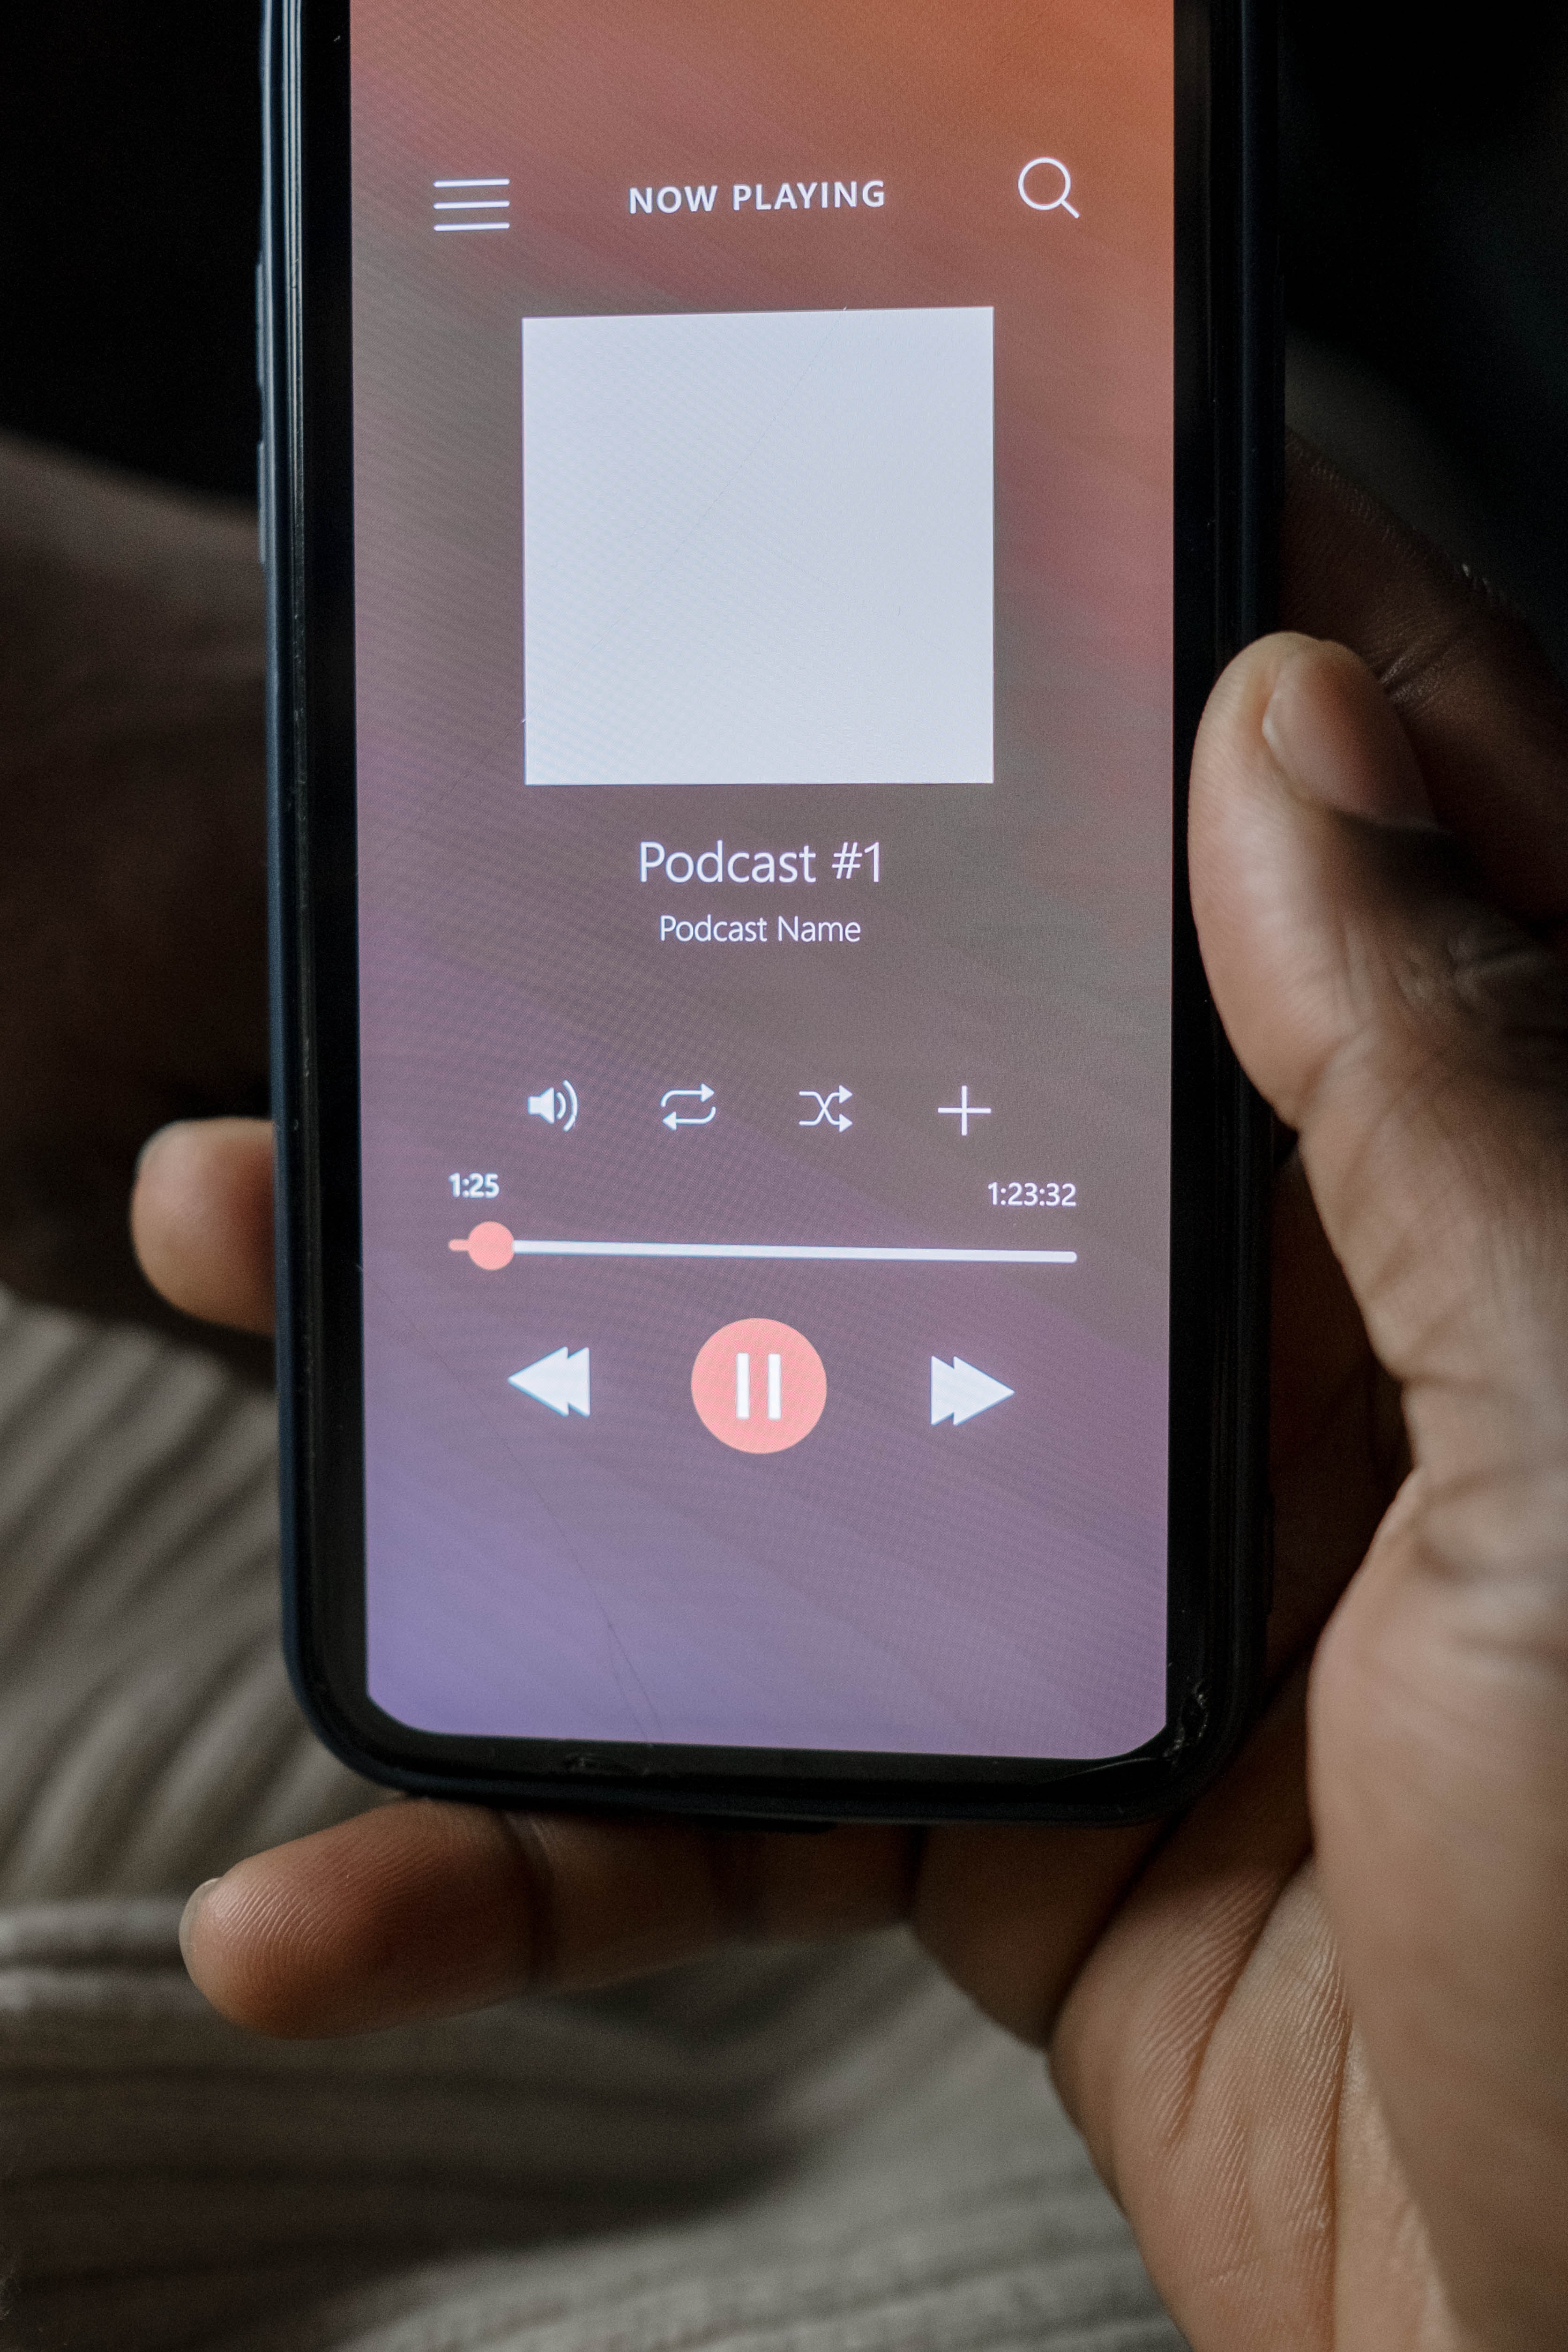 Dispositivo móvil sujetado por una mano y reproduciendo un podcast o emisión sonora. 